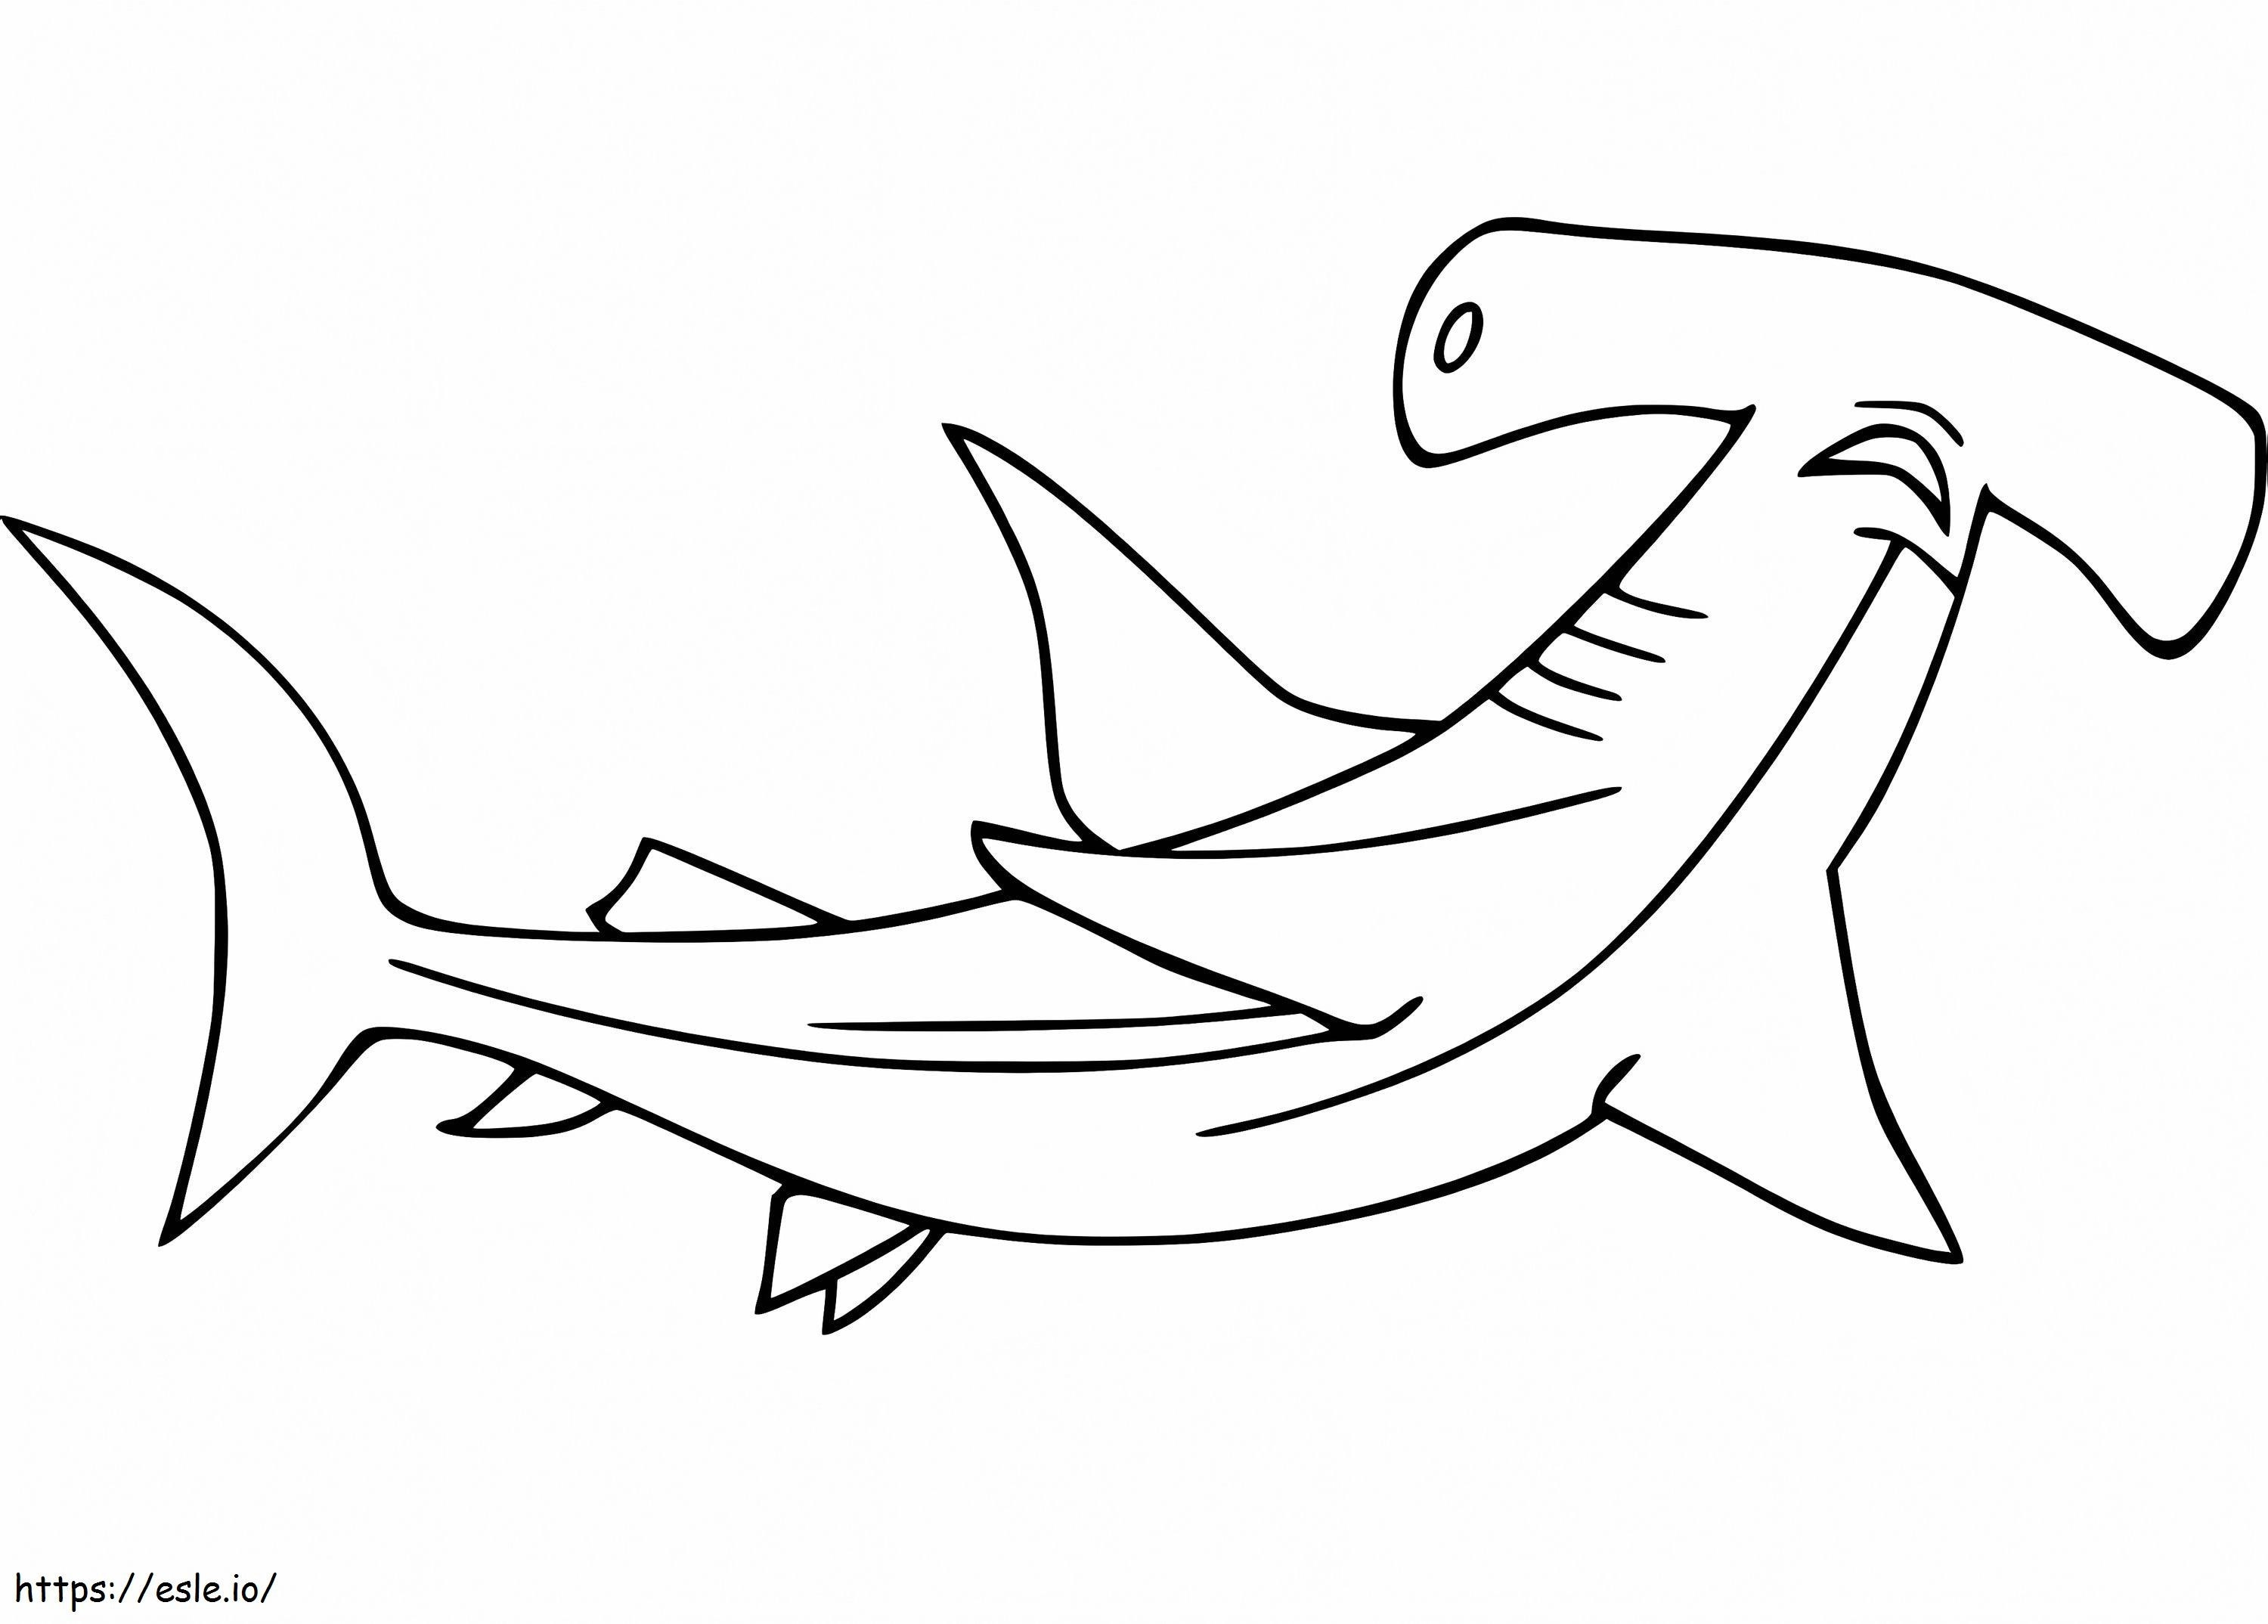 Un rechin ciocan de colorat